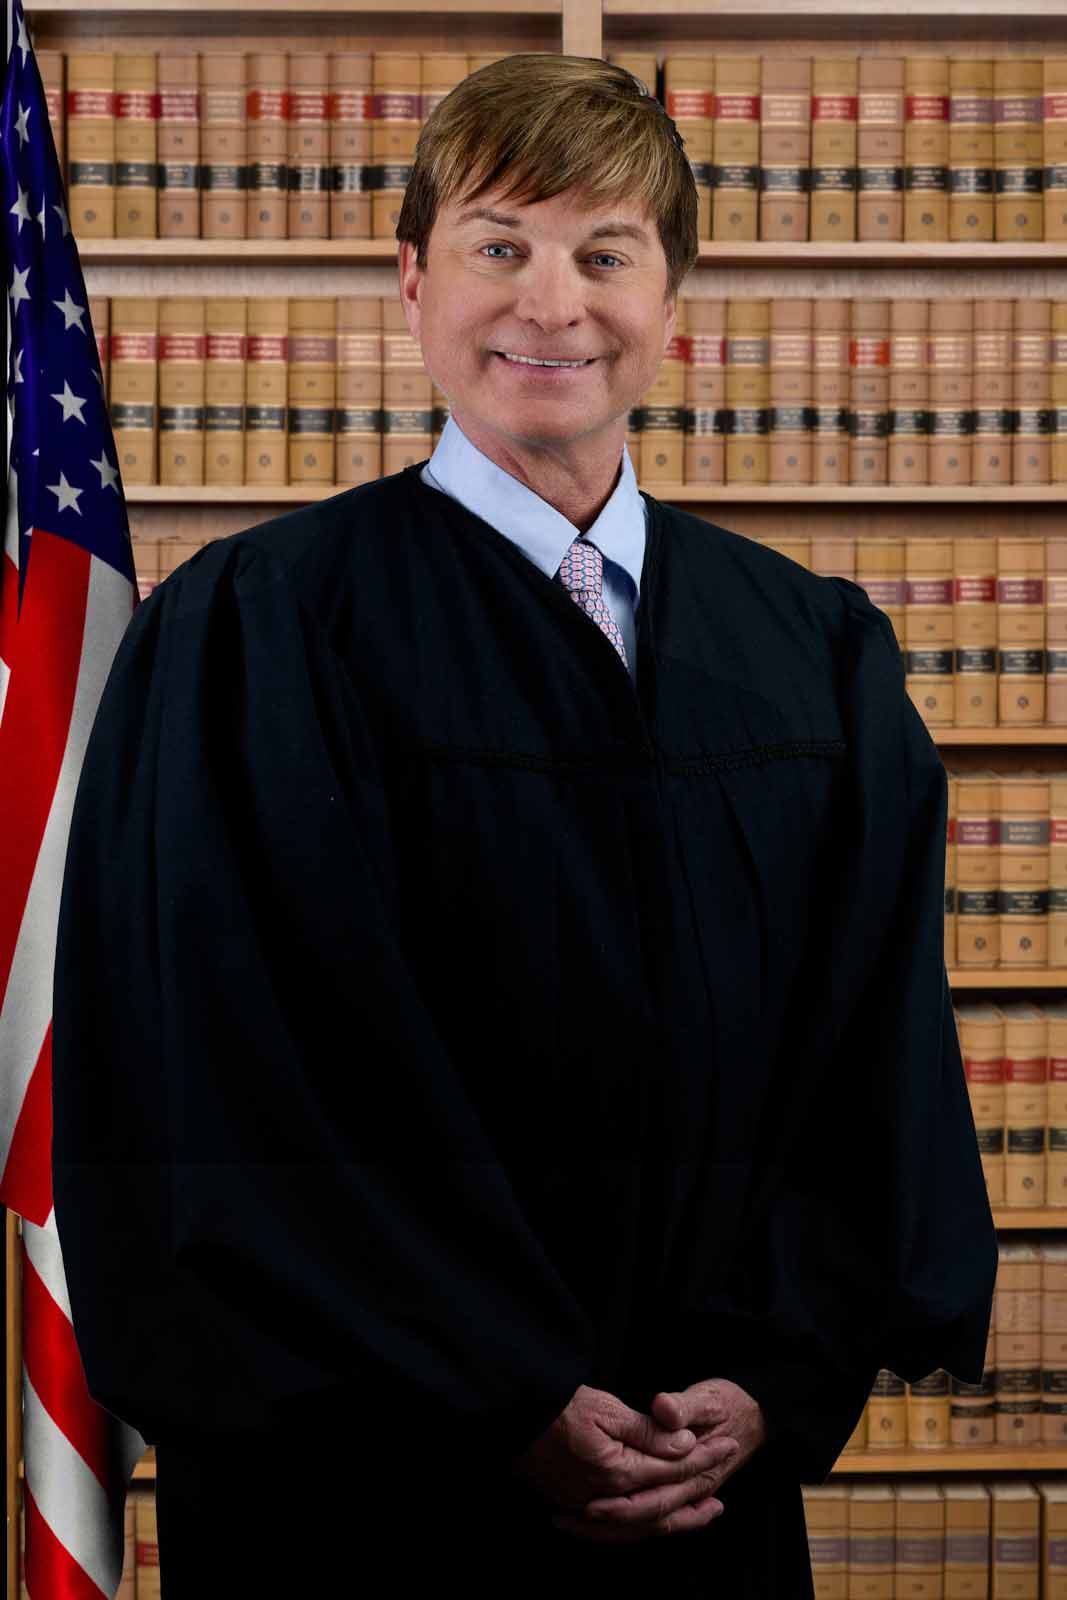 Judge Craig L. Schwall